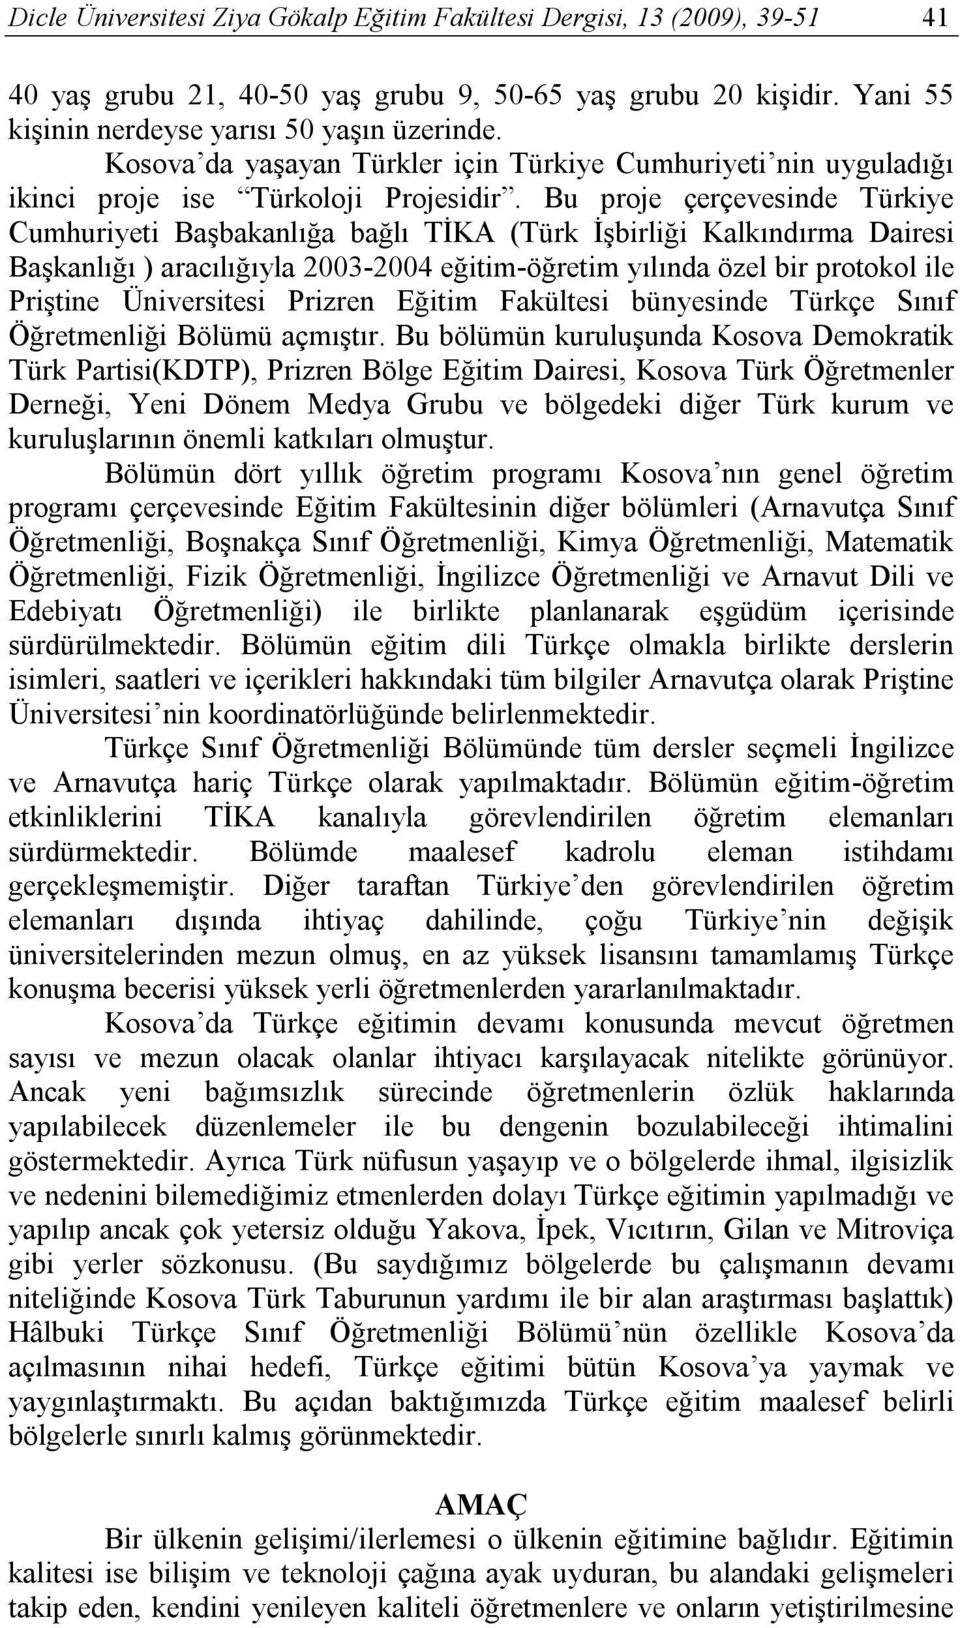 Bu proje çerçevesinde Türkiye Cumhuriyeti Başbakanlığa bağlı TİKA (Türk İşbirliği Kalkındırma Dairesi Başkanlığı ) aracılığıyla 2003-2004 eğitim-öğretim yılında özel bir protokol ile Priştine